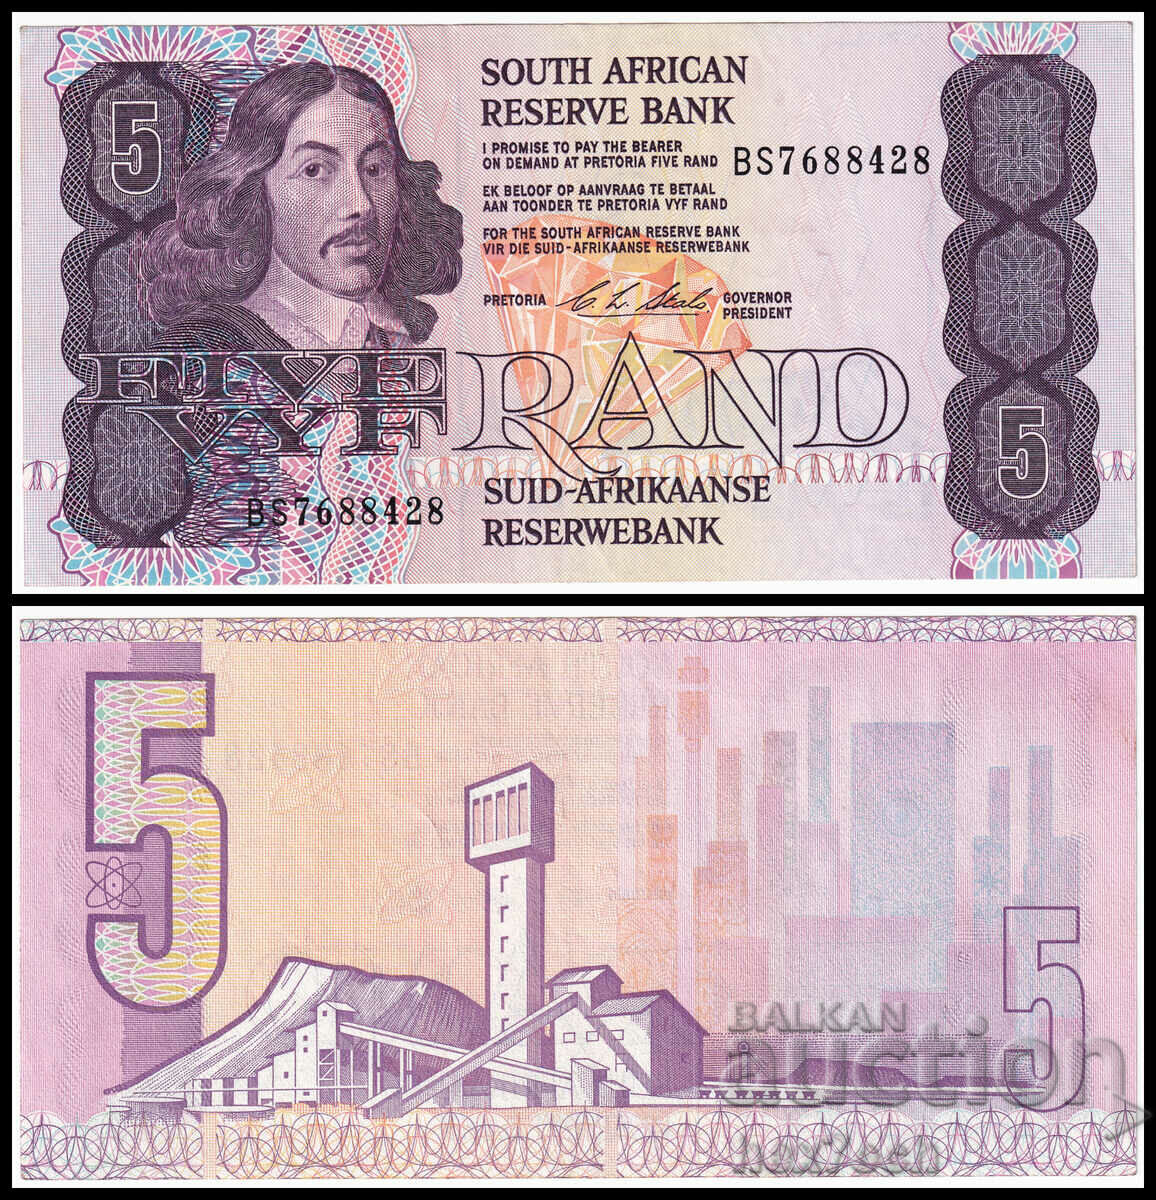 ❤️ ⭐ Africa de Sud Africa de Sud 1978-1994 5 rand ⭐ ❤️